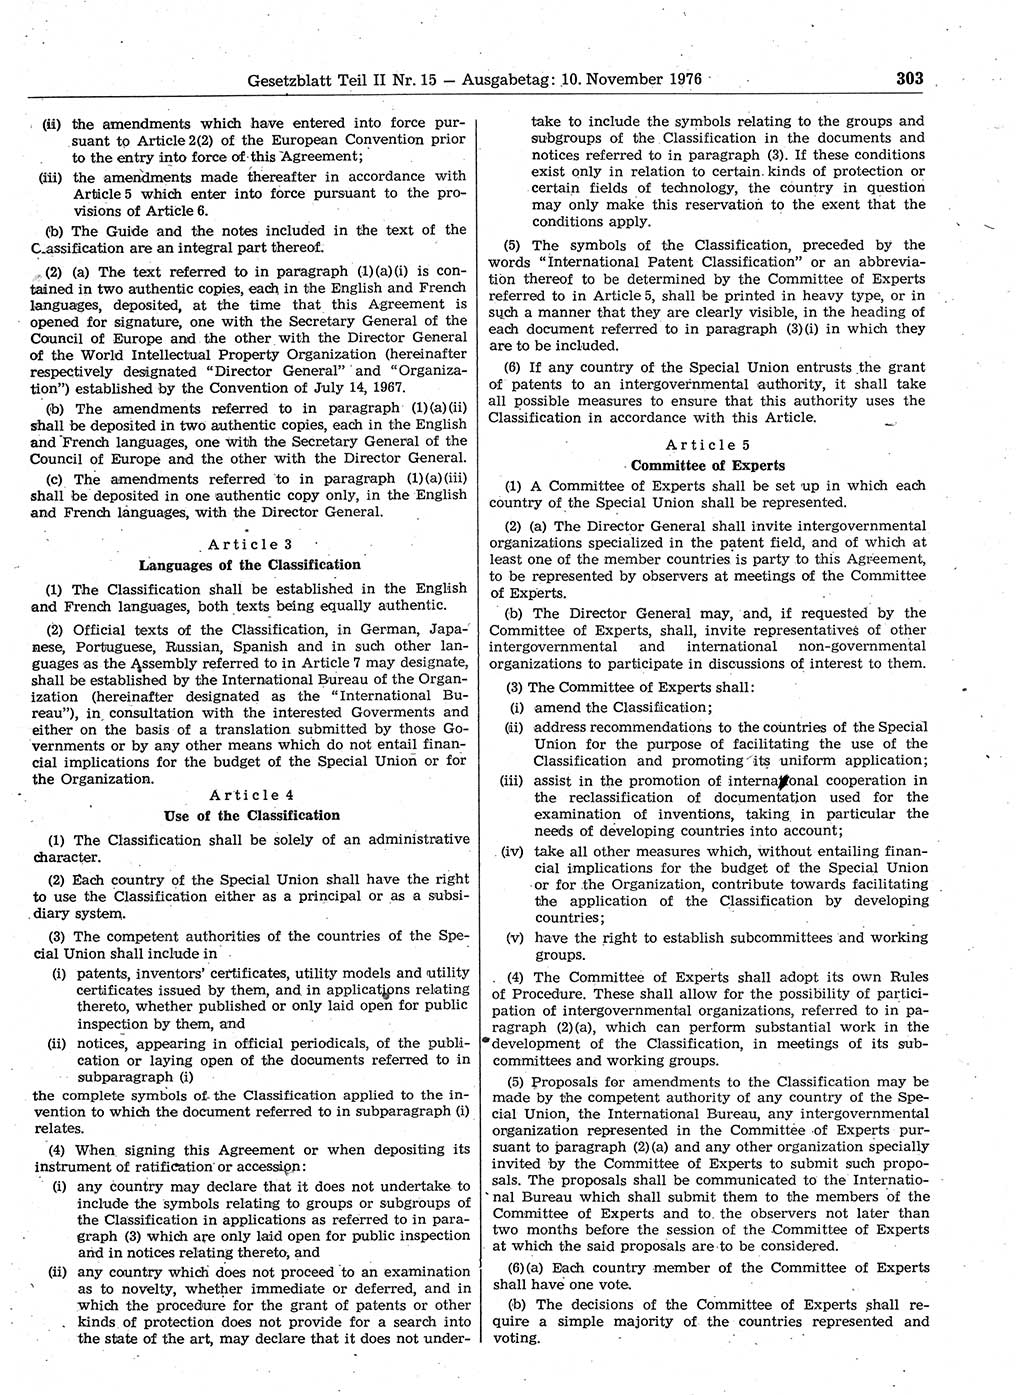 Gesetzblatt (GBl.) der Deutschen Demokratischen Republik (DDR) Teil ⅠⅠ 1976, Seite 303 (GBl. DDR ⅠⅠ 1976, S. 303)